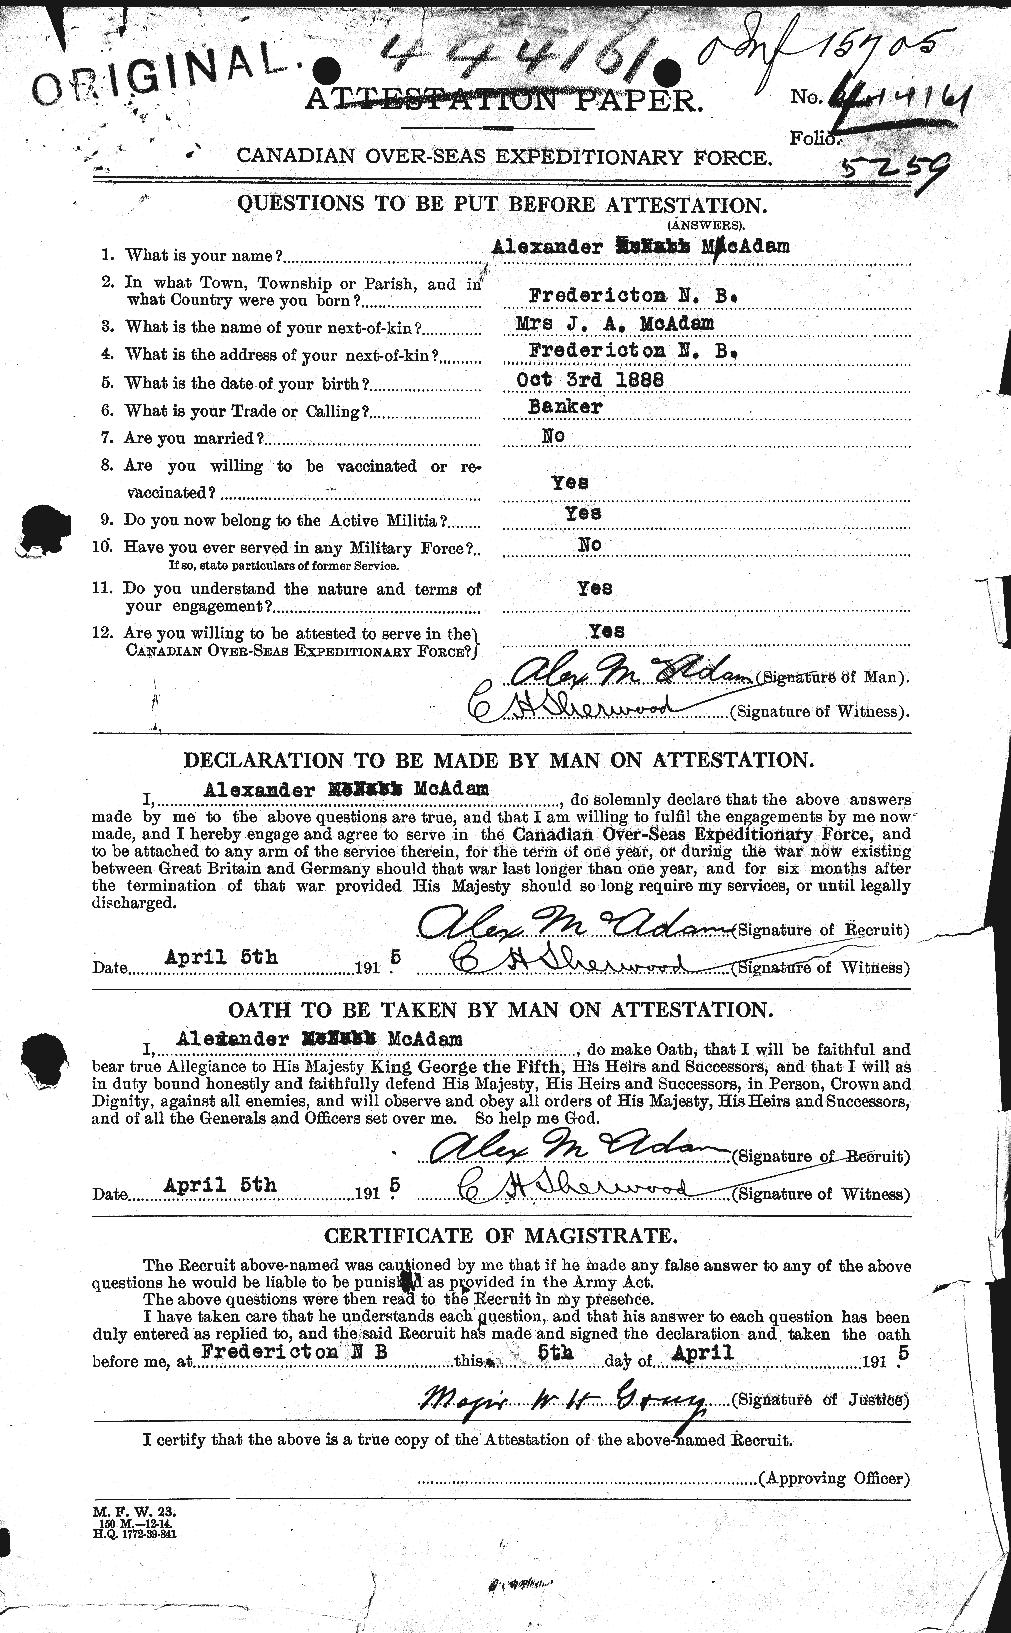 Dossiers du Personnel de la Première Guerre mondiale - CEC 130474a